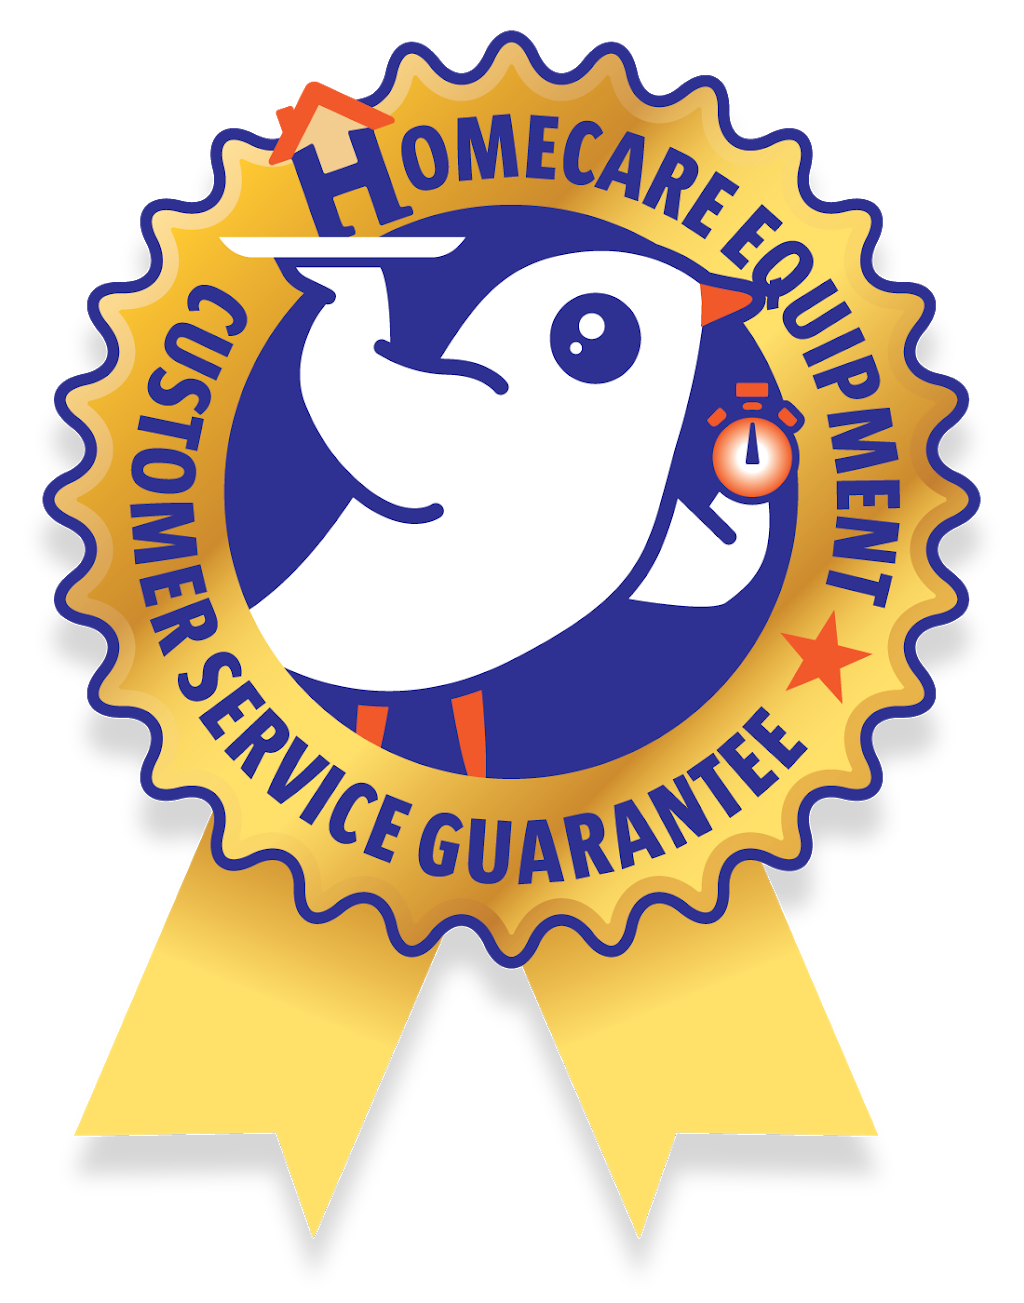 Homecare Equipment Services | 664 South Rd, Glandore SA 5037, Australia | Phone: (08) 8338 7988